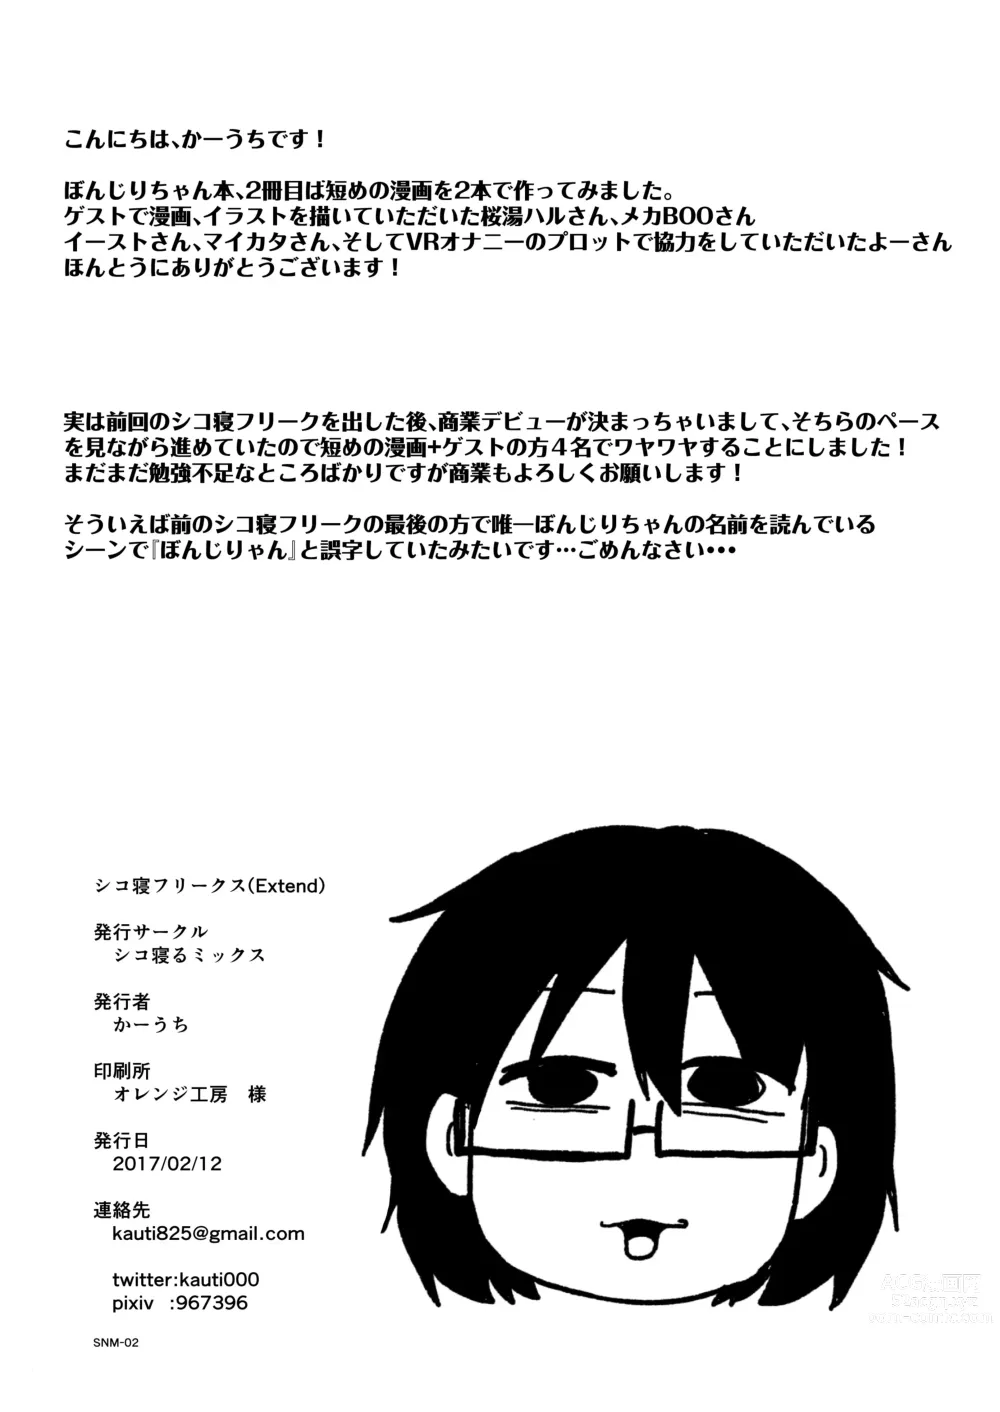 Page 24 of doujinshi Shiko_Ne_Freak EXTEND